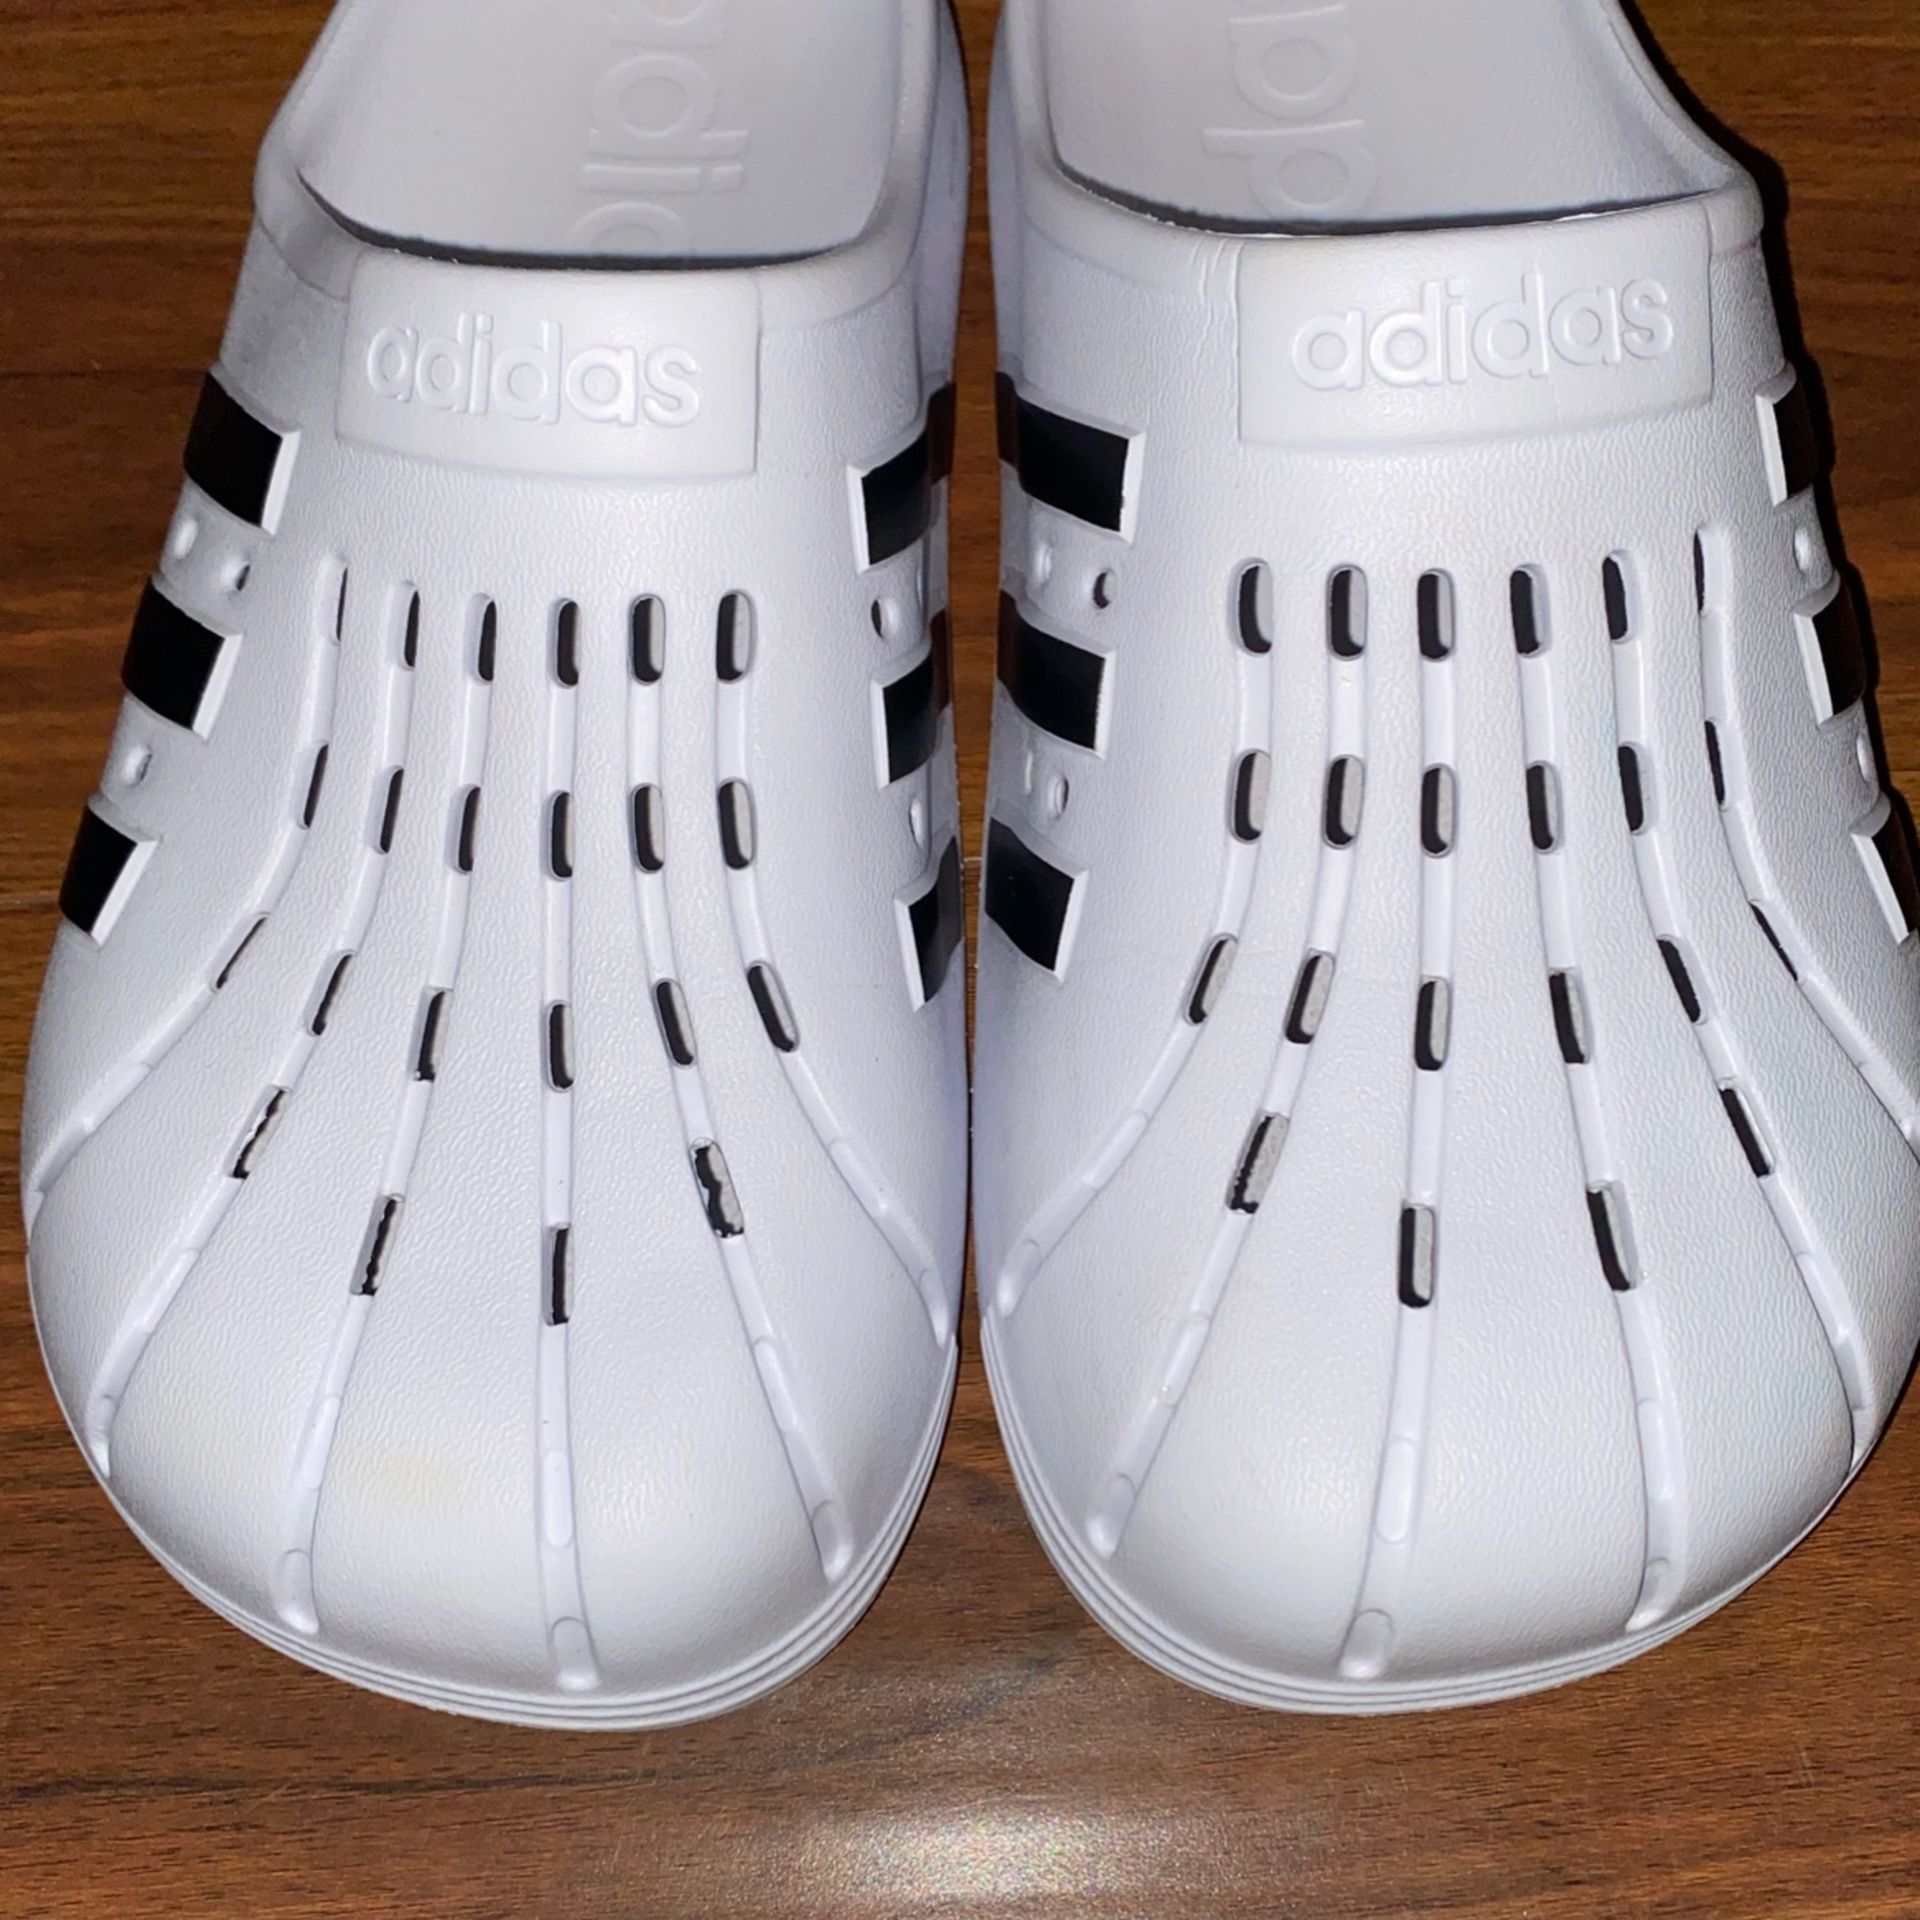 Adidas Crocs Size 8 USM